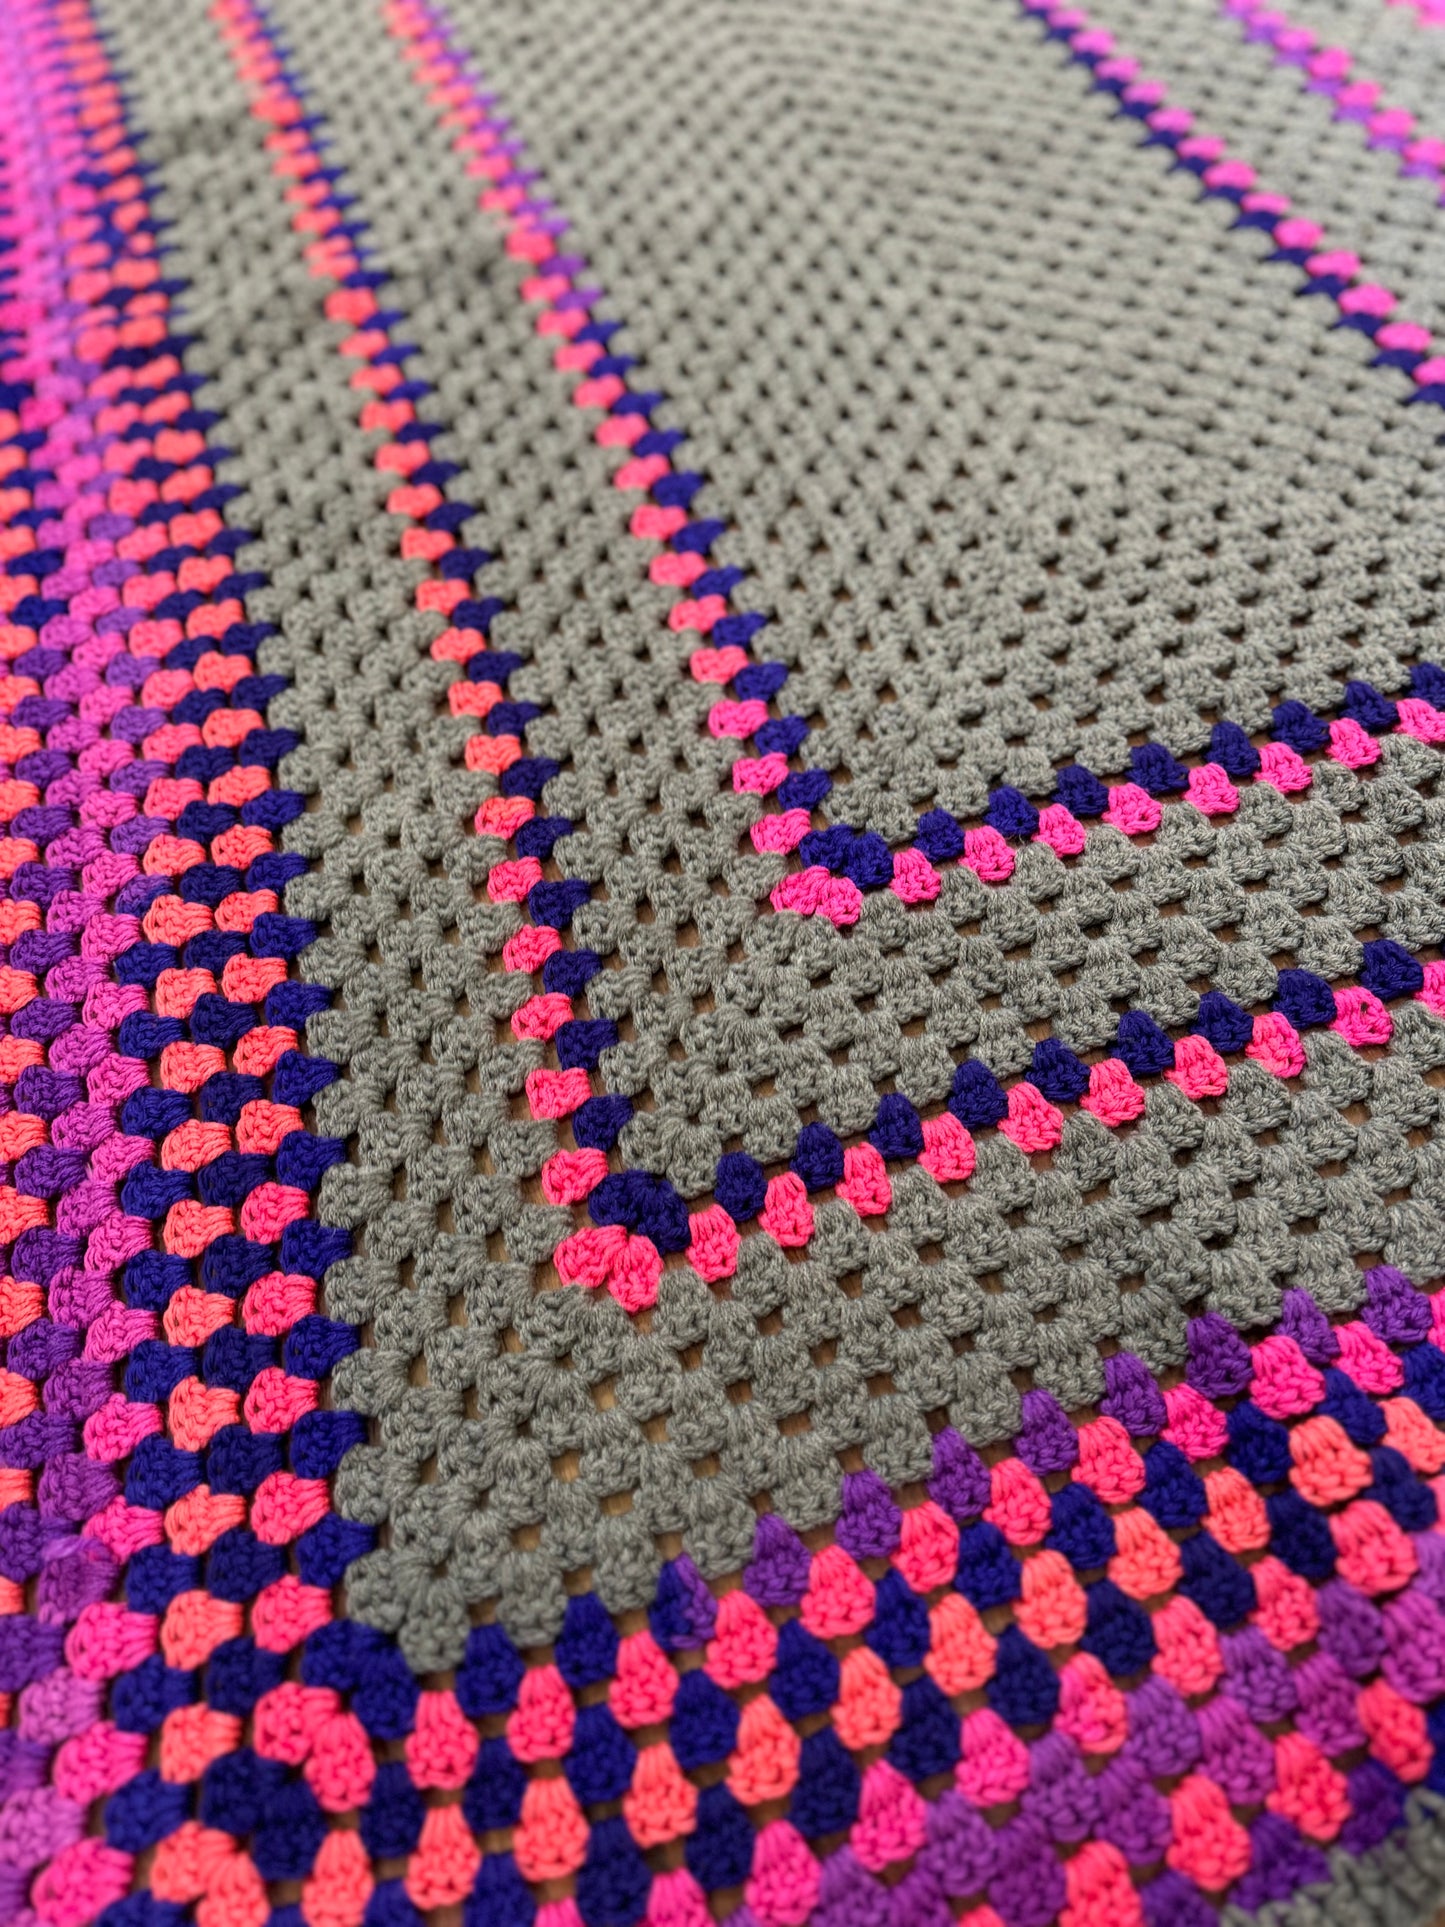 Gray, Violet & Hot Pink Afghan - 36x60”